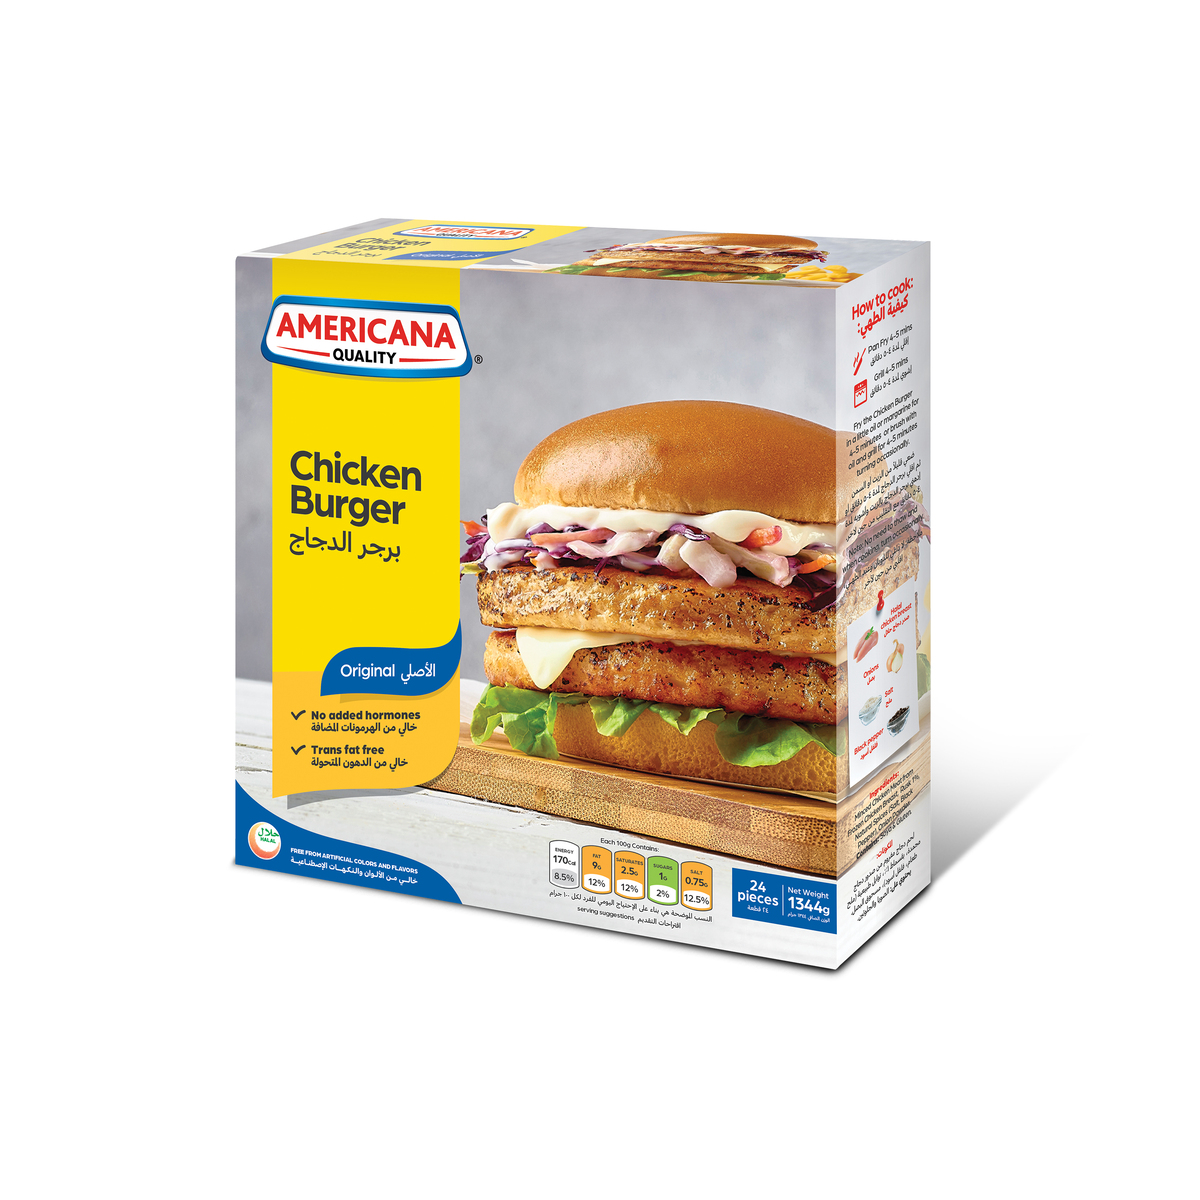 Buy Americana Chicken Burger 24 pcs Online at Best Price | Chicken Burgers | Lulu UAE in UAE